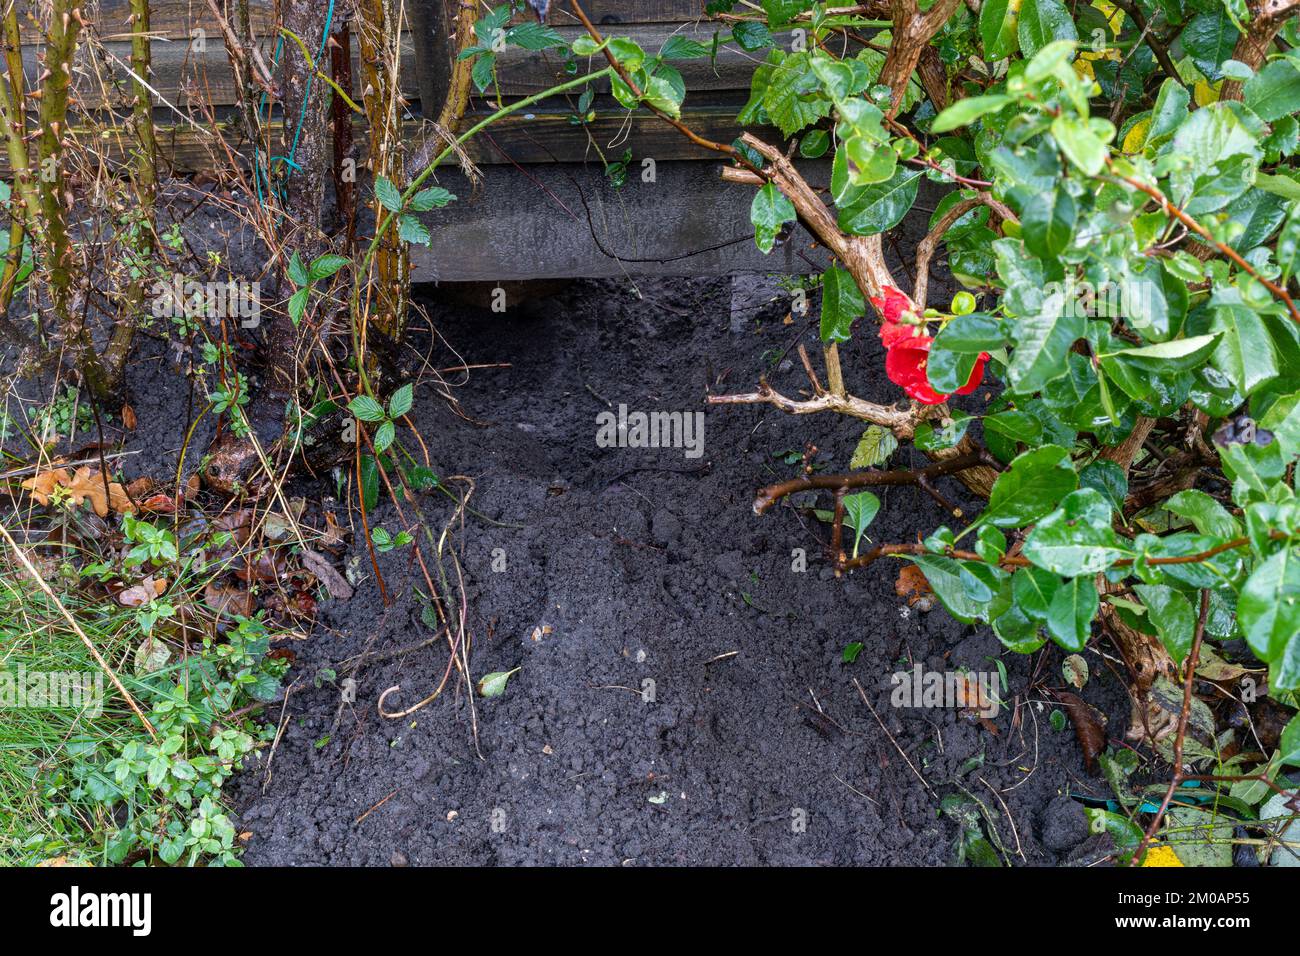 Un gran agujero bajo una valla de jardín excavada por un zorro, signos de la vida silvestre de jardín, Inglaterra, Reino Unido Foto de stock